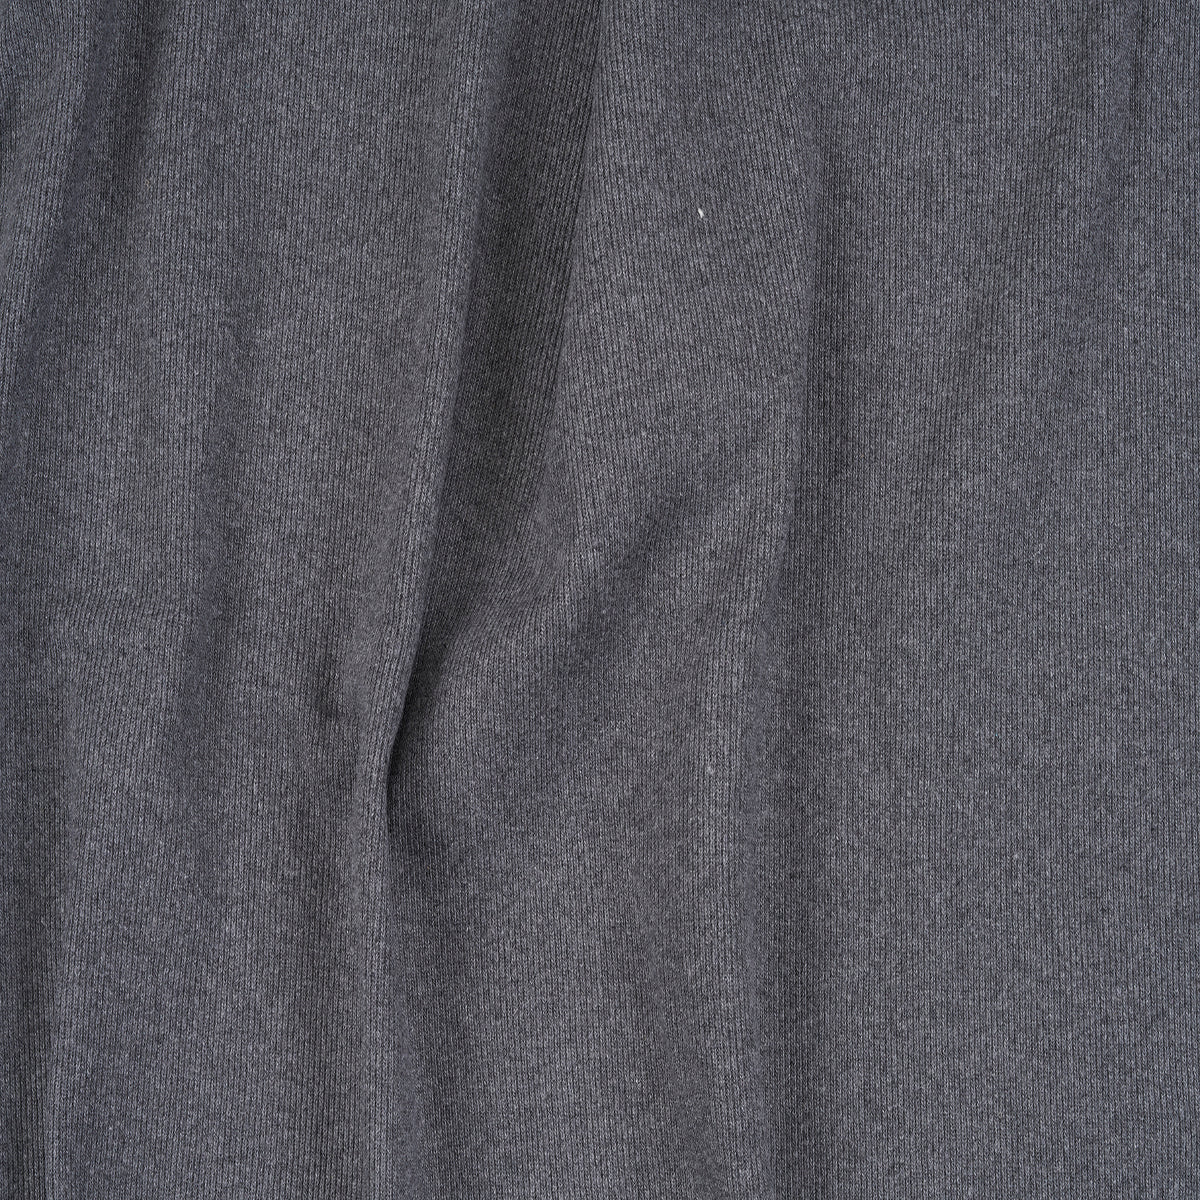 Black Organic Cotton Tubular Ribbing Fabric